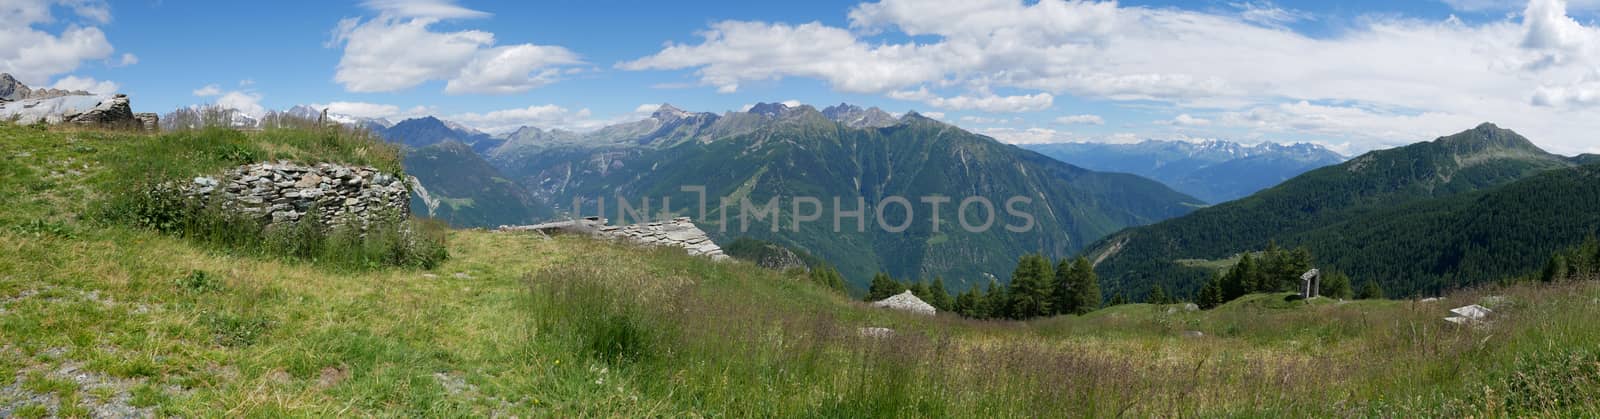 Alpine landscape in summer in Valtellina
 by gigidread